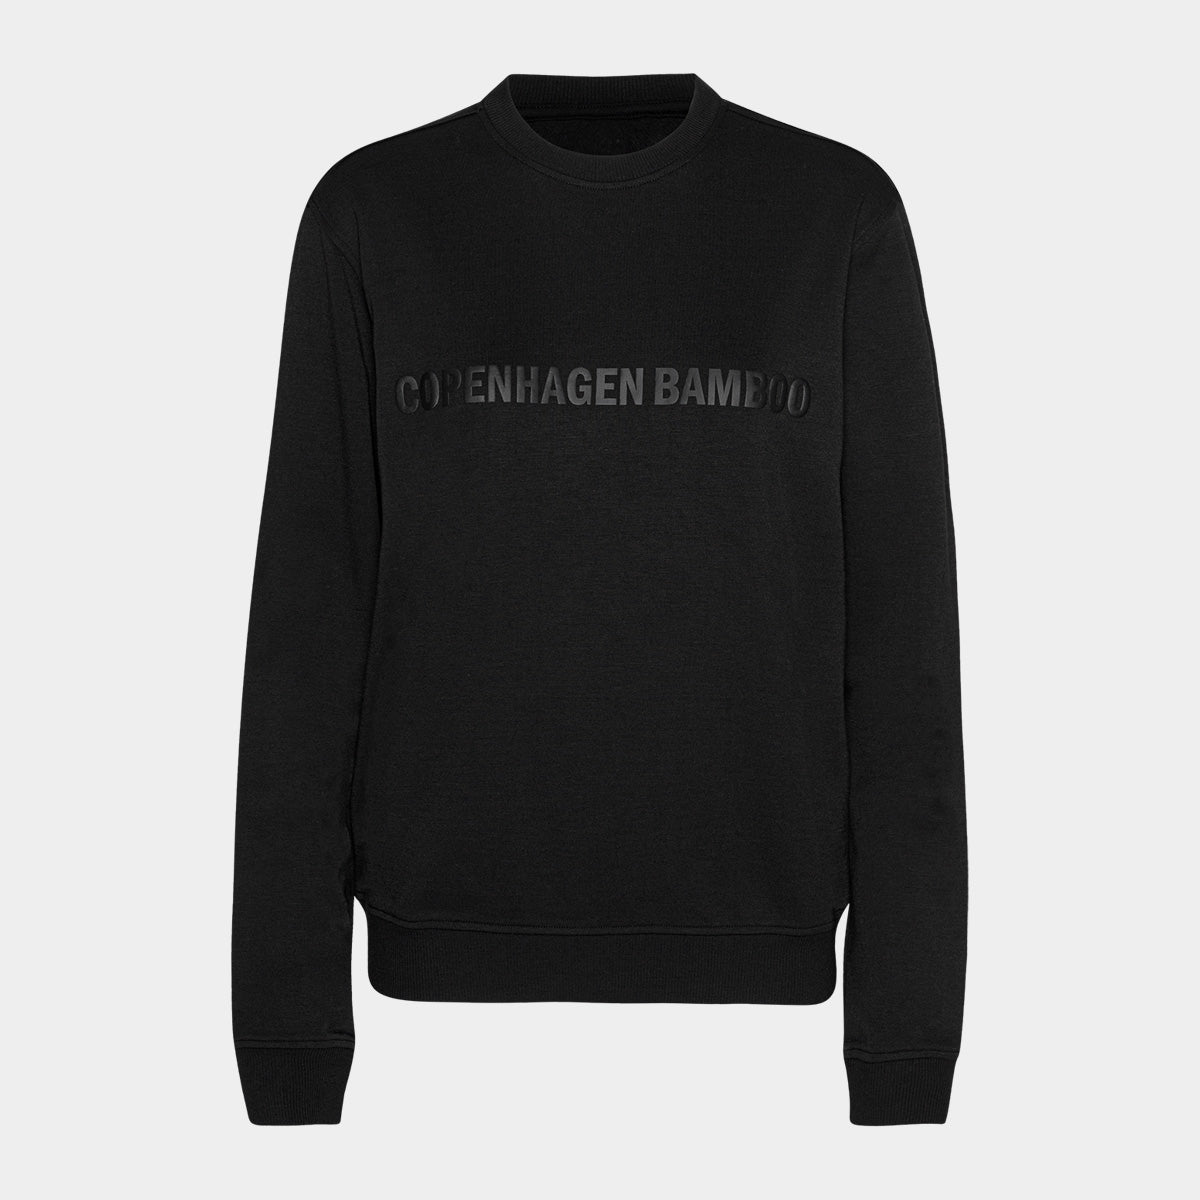 Se Sort bambus sweatshirt til mænd med logo fra Copenhagen Bamboo, XXL hos Bambustøj.dk